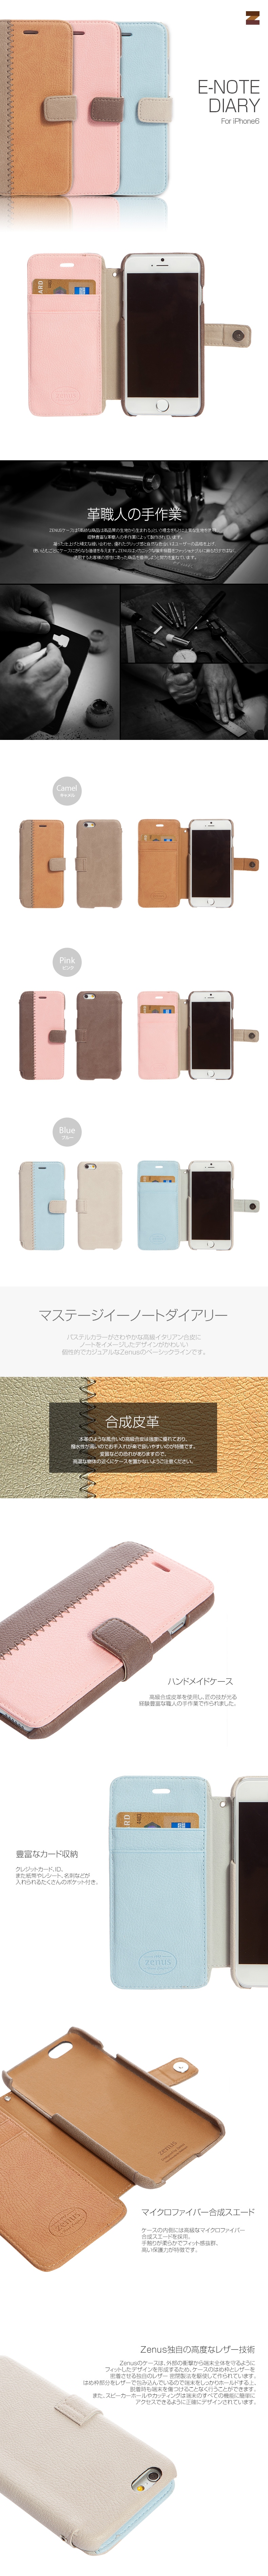 商品詳細-iPhone6専用ケース